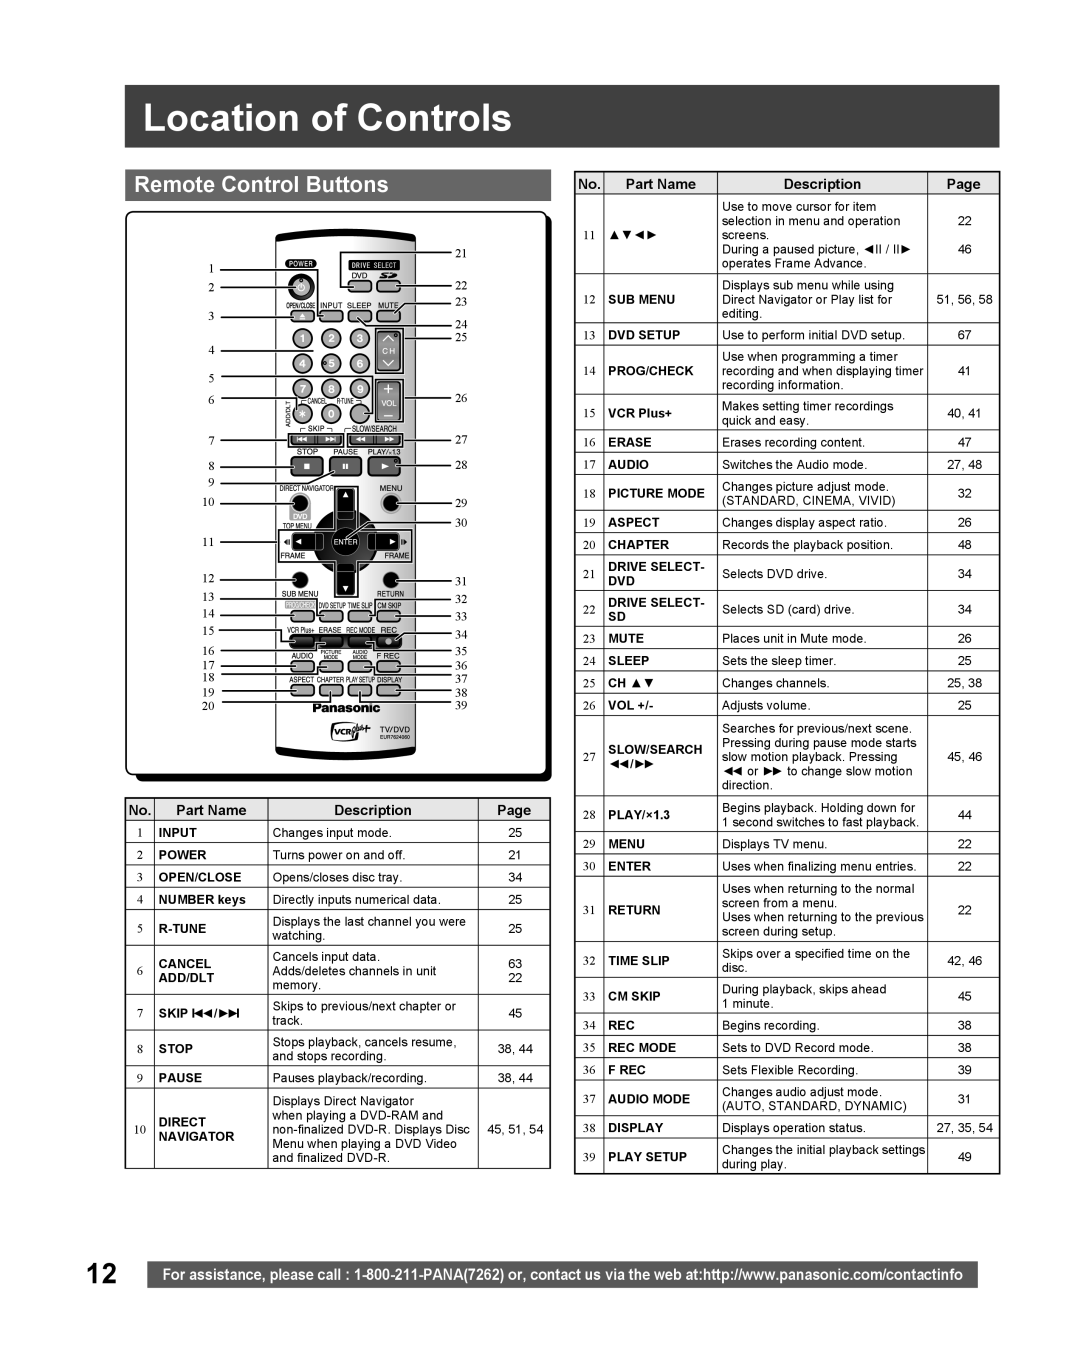 Panasonic TC 22LR30 manual Location of Controls, Remote Control Buttons, Part Name, Description, Page 